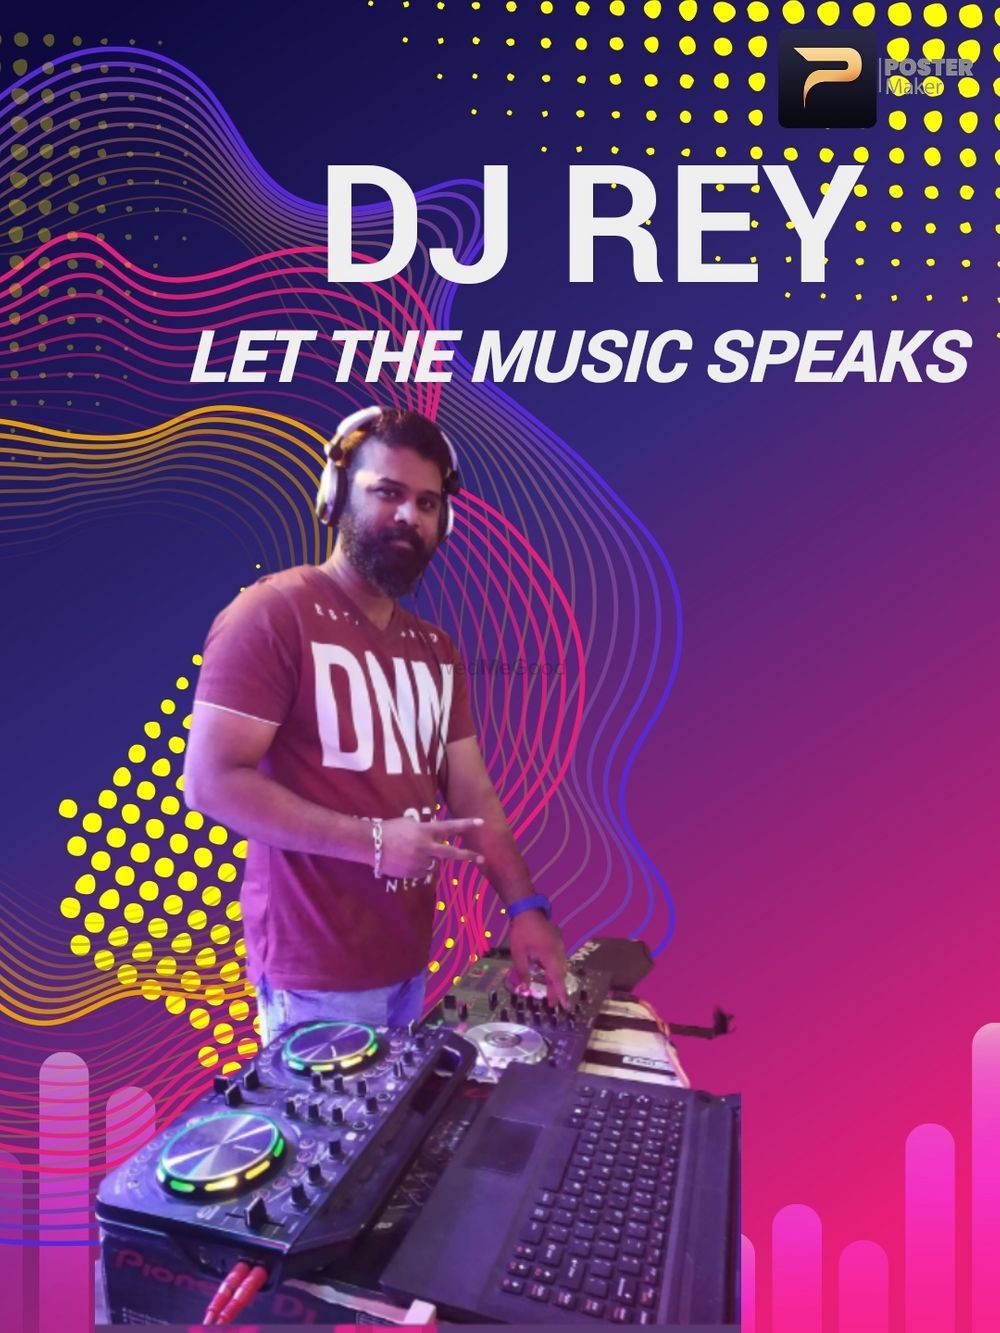 Photo From Dj Rey Events - By DJ Rey